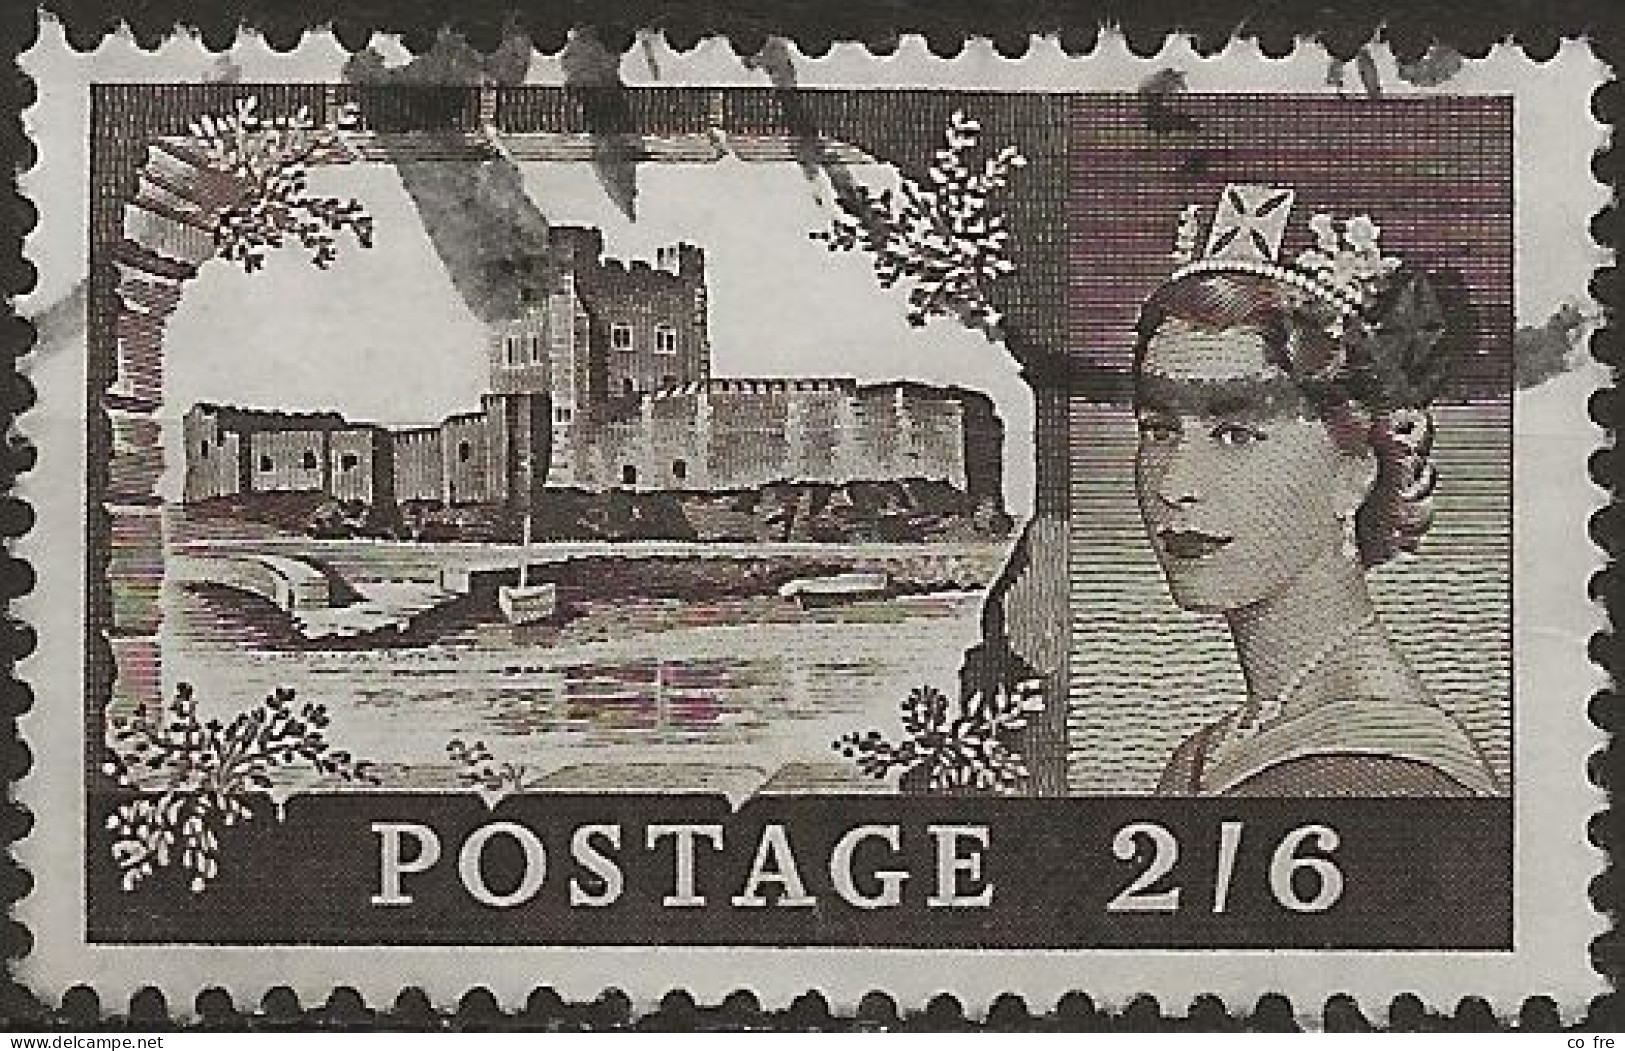 Grande-Bretagne N°502 (ref.2) - Used Stamps